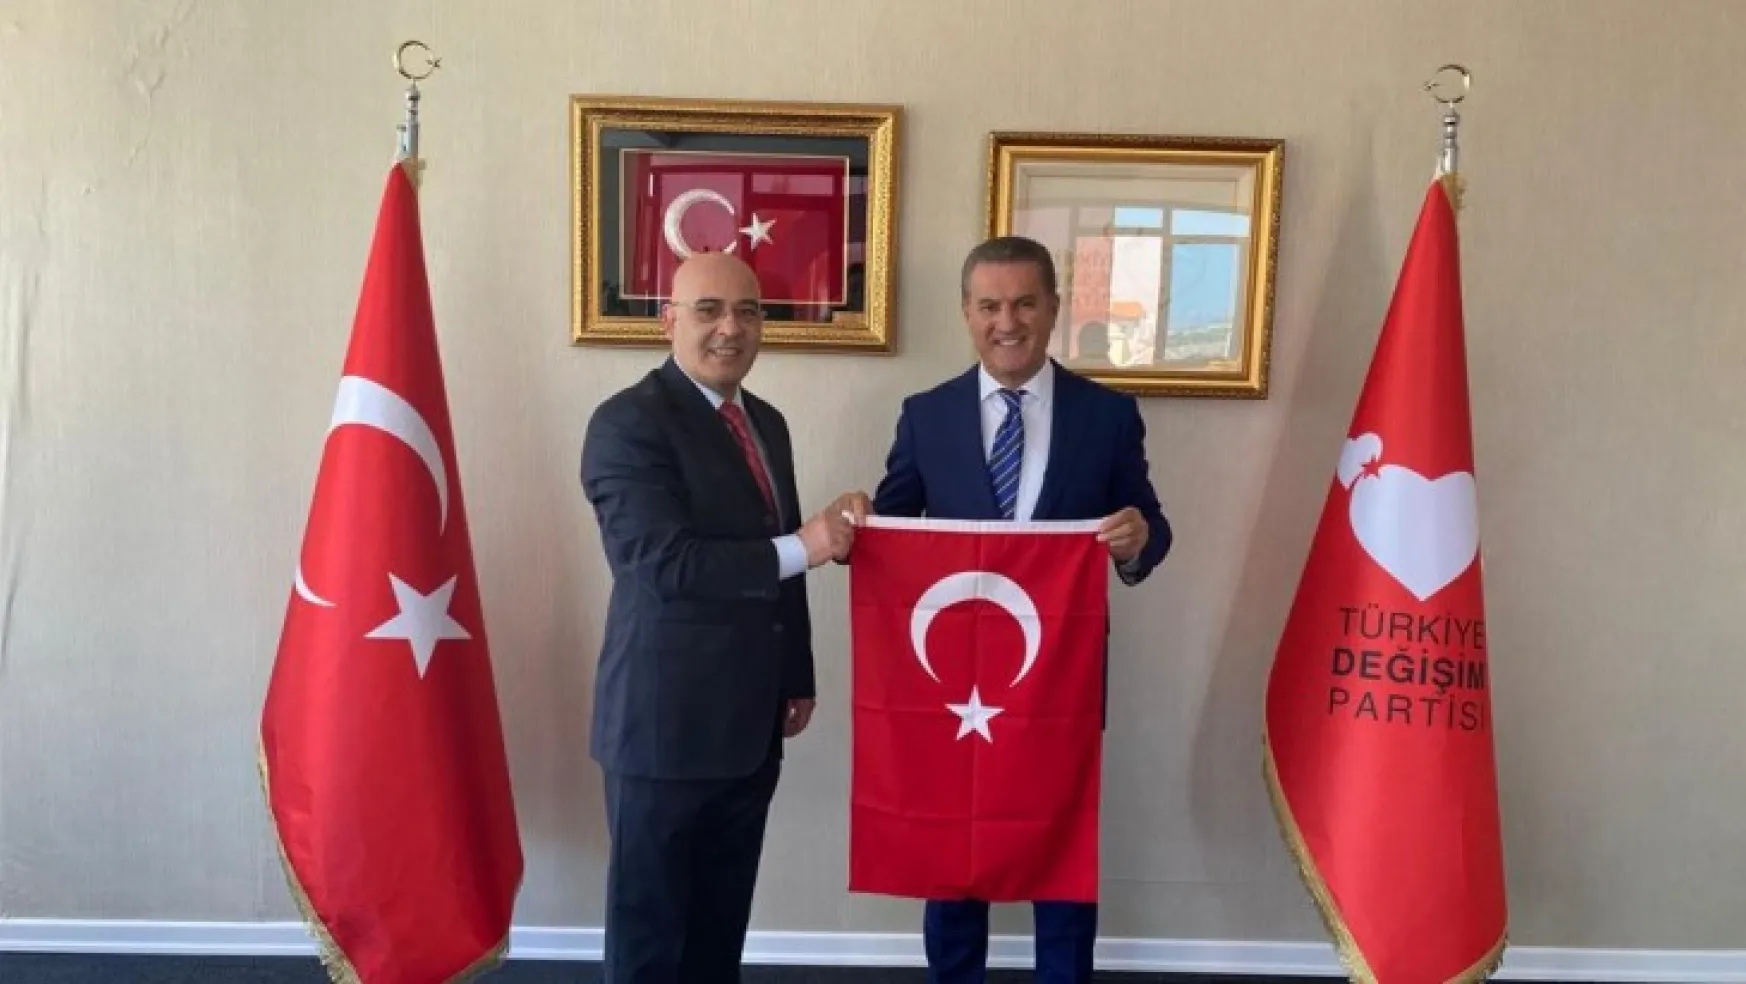 Türkiye Değişim Partisi Parti meclisi üyeliğine seçildi